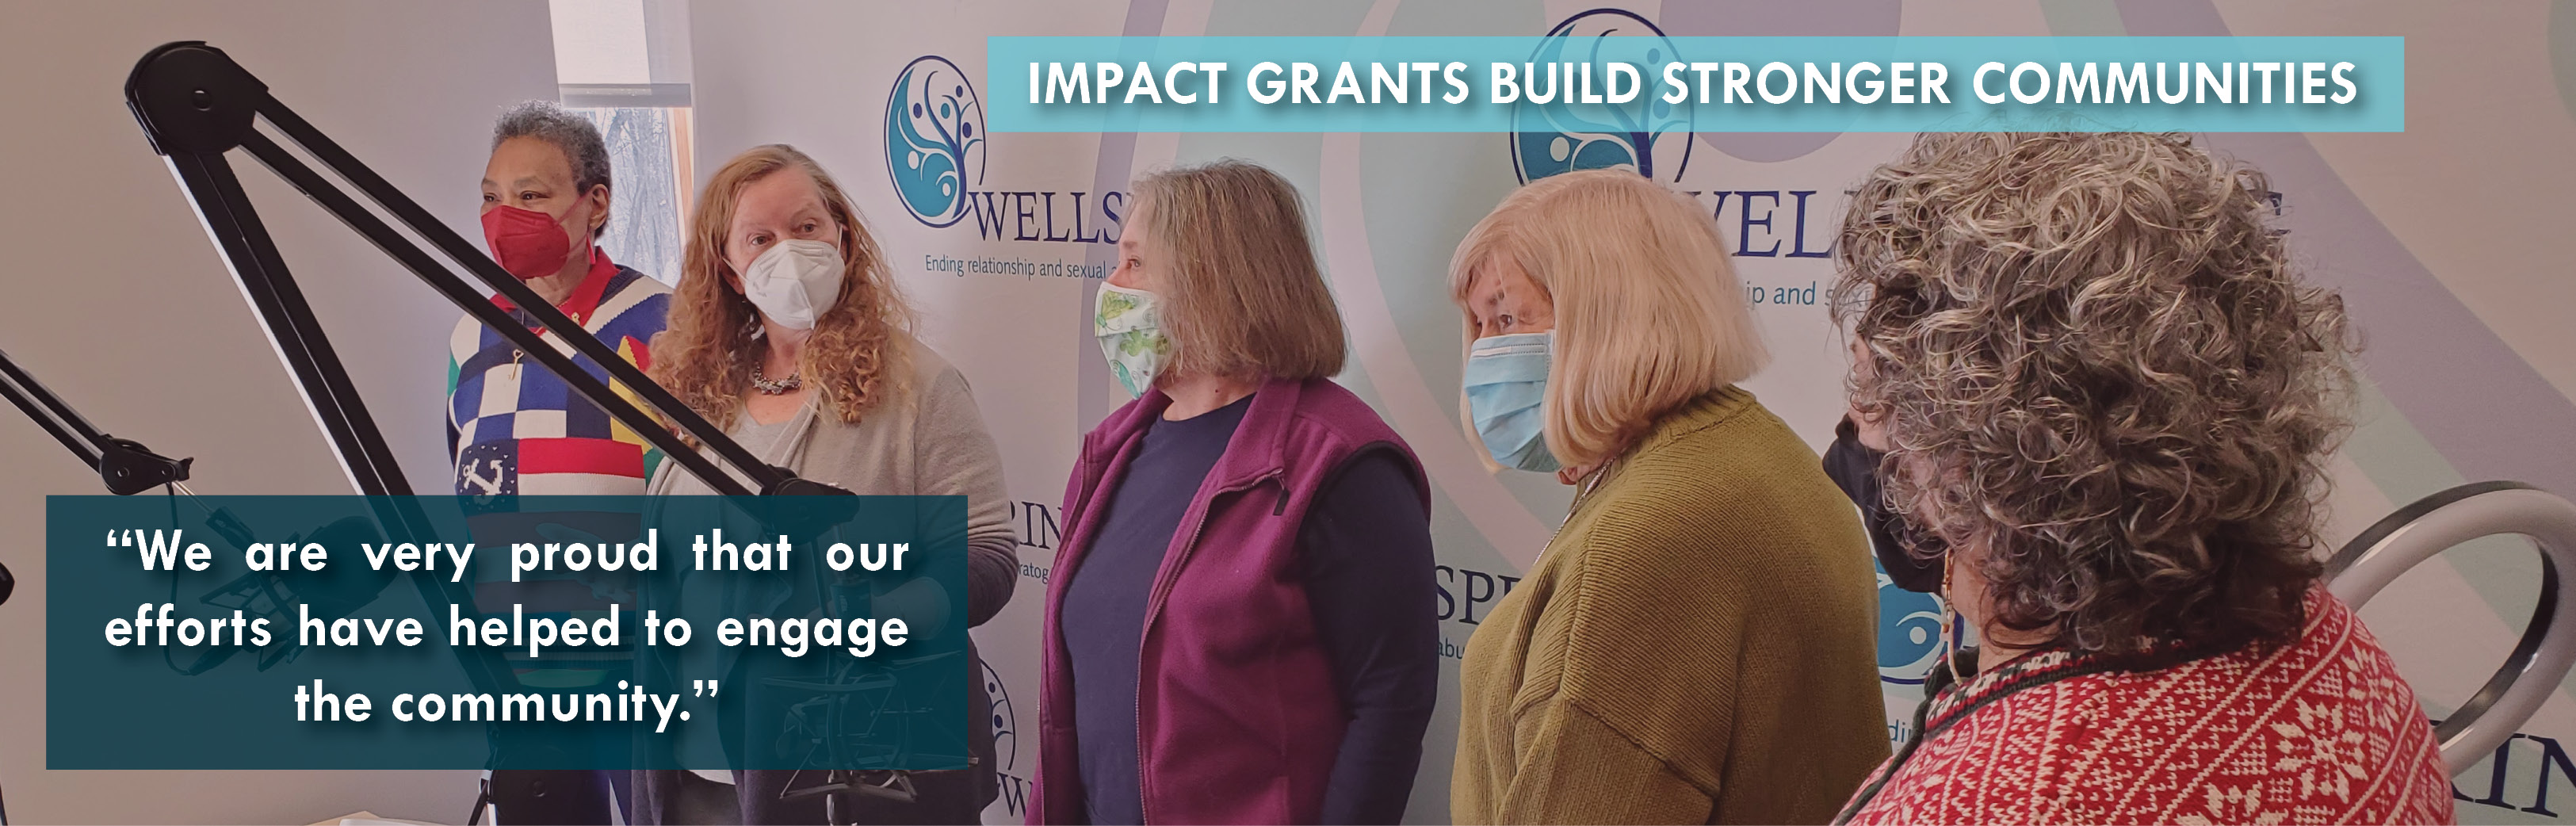 Impact Grants Build Stronger Communities